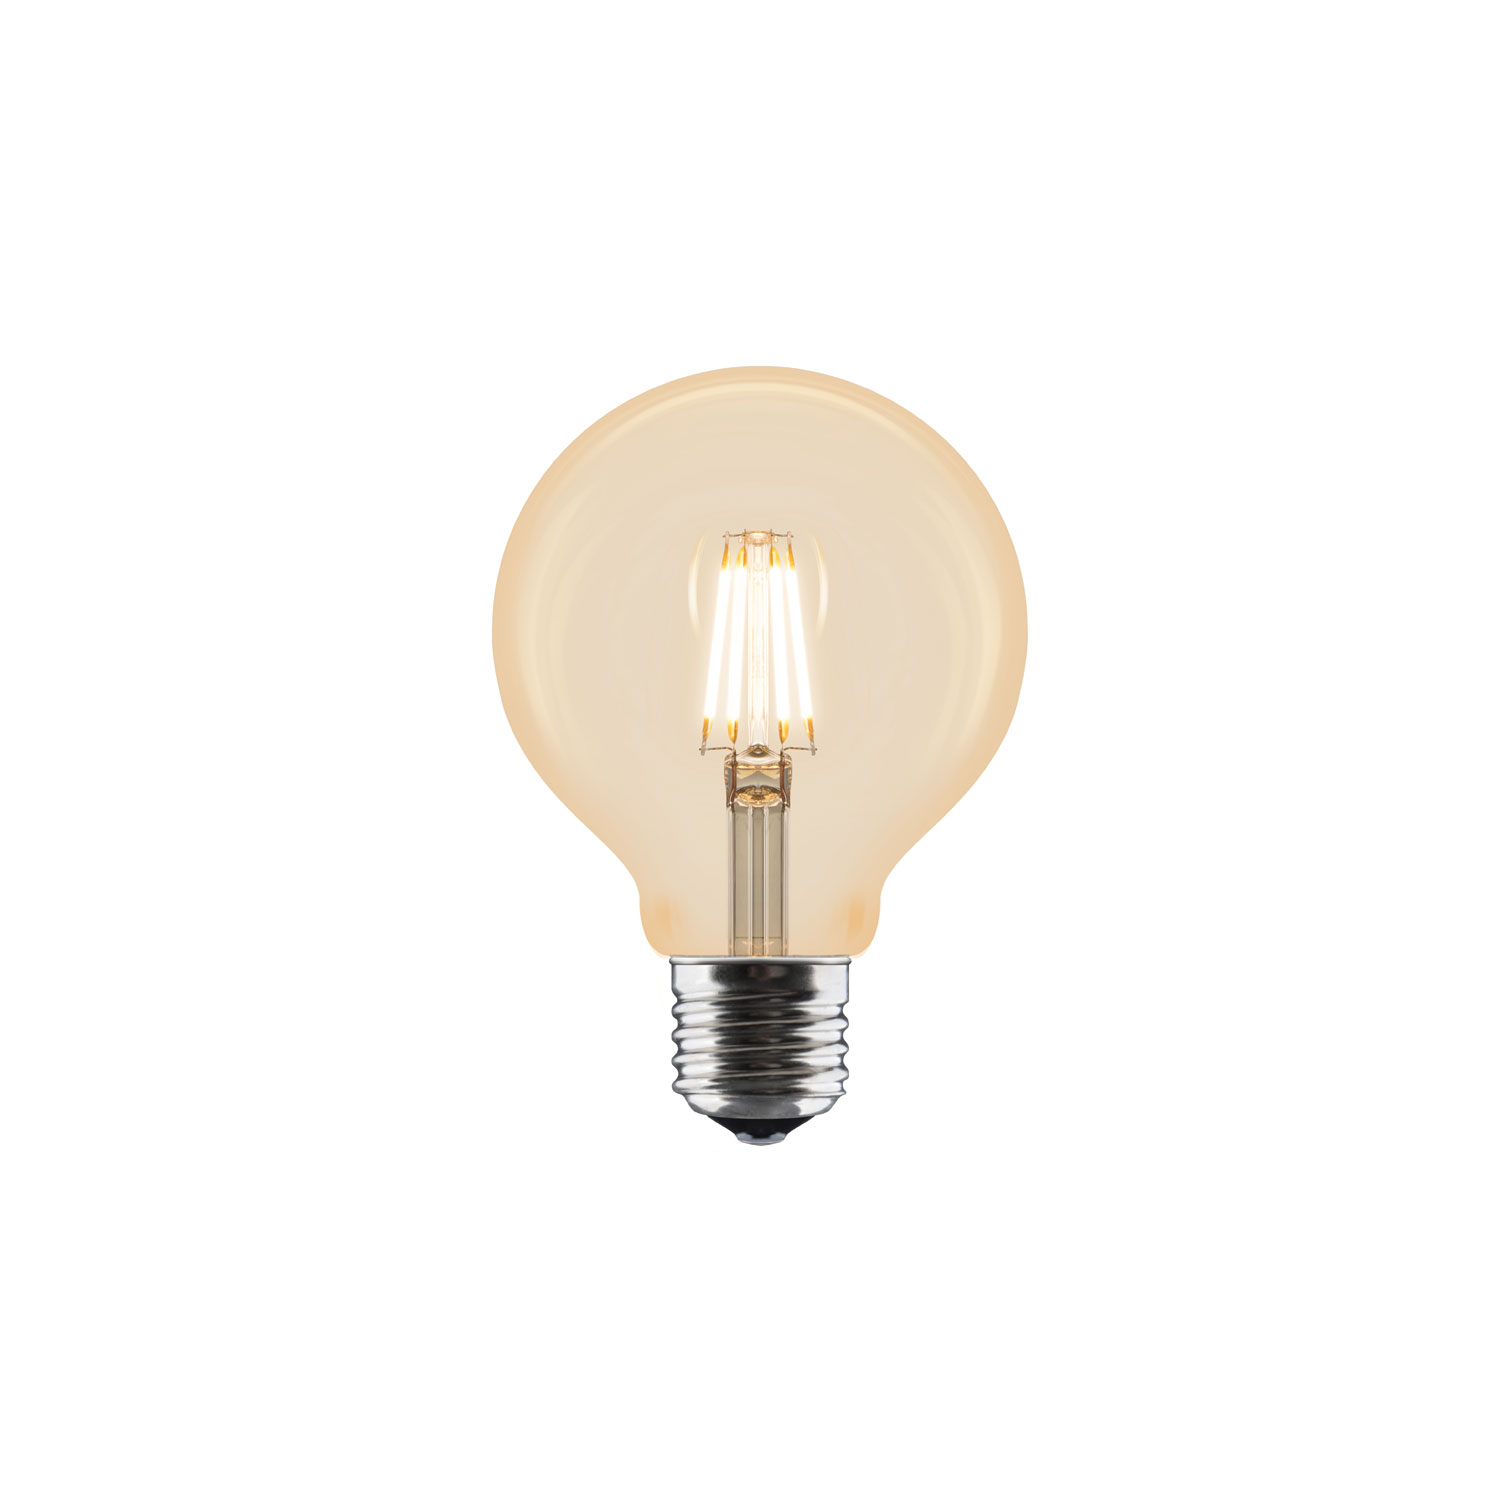 Idea Bulb E27 2W, 80 mm Umage @ RoyalDesign